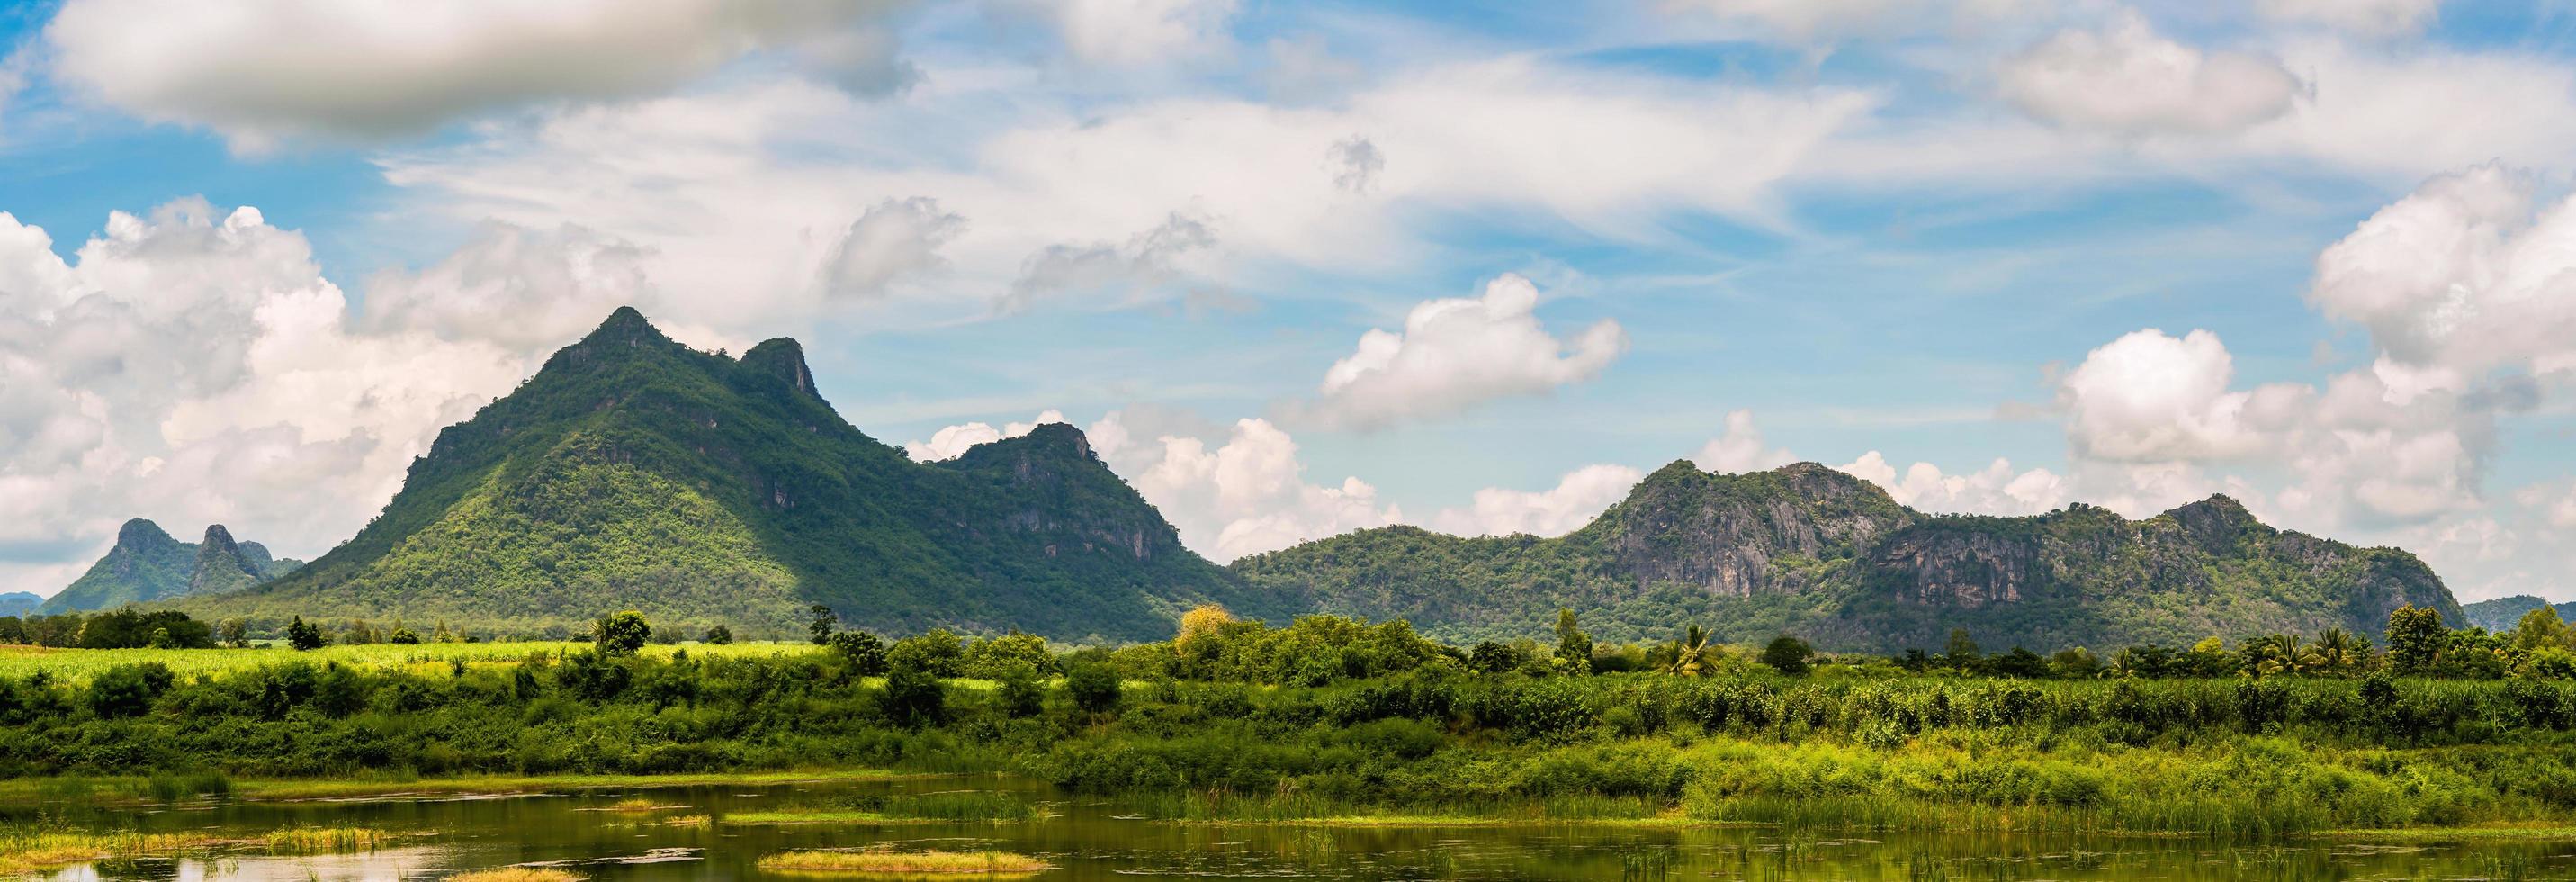 panorama du paysage de montagne en thaïlande photo